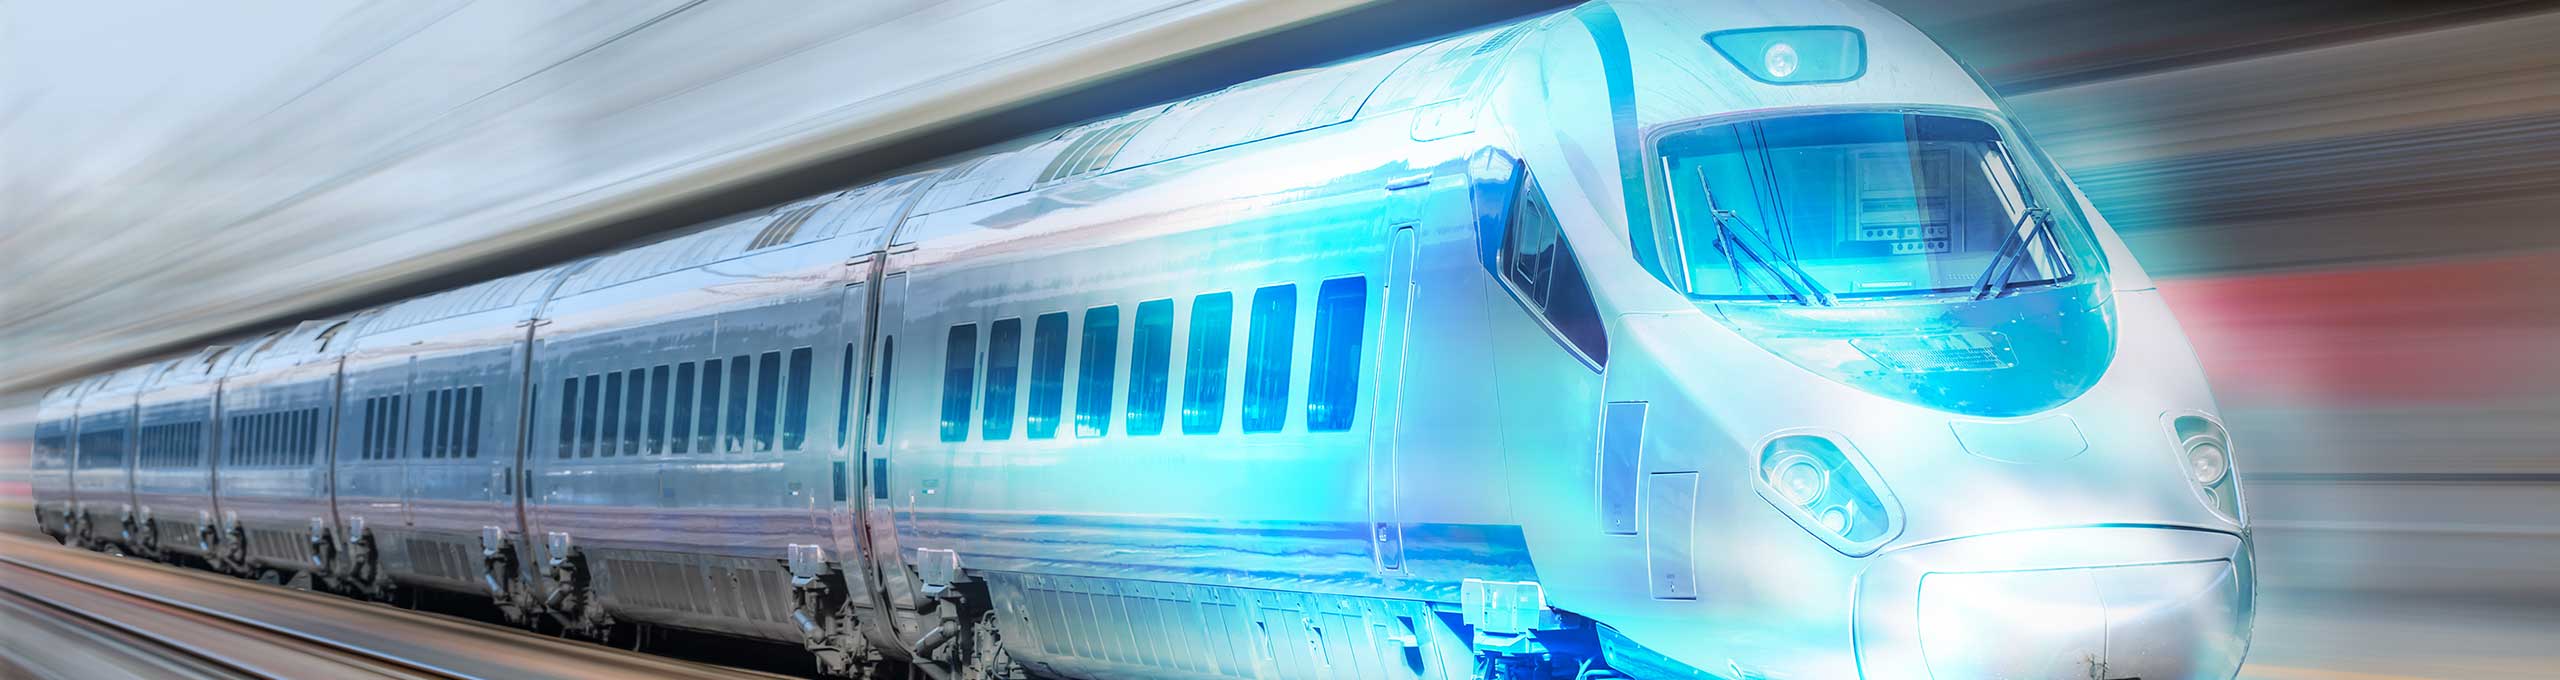 Imagen estilizada de un tren bala, acelerando las vías hacia el futuro